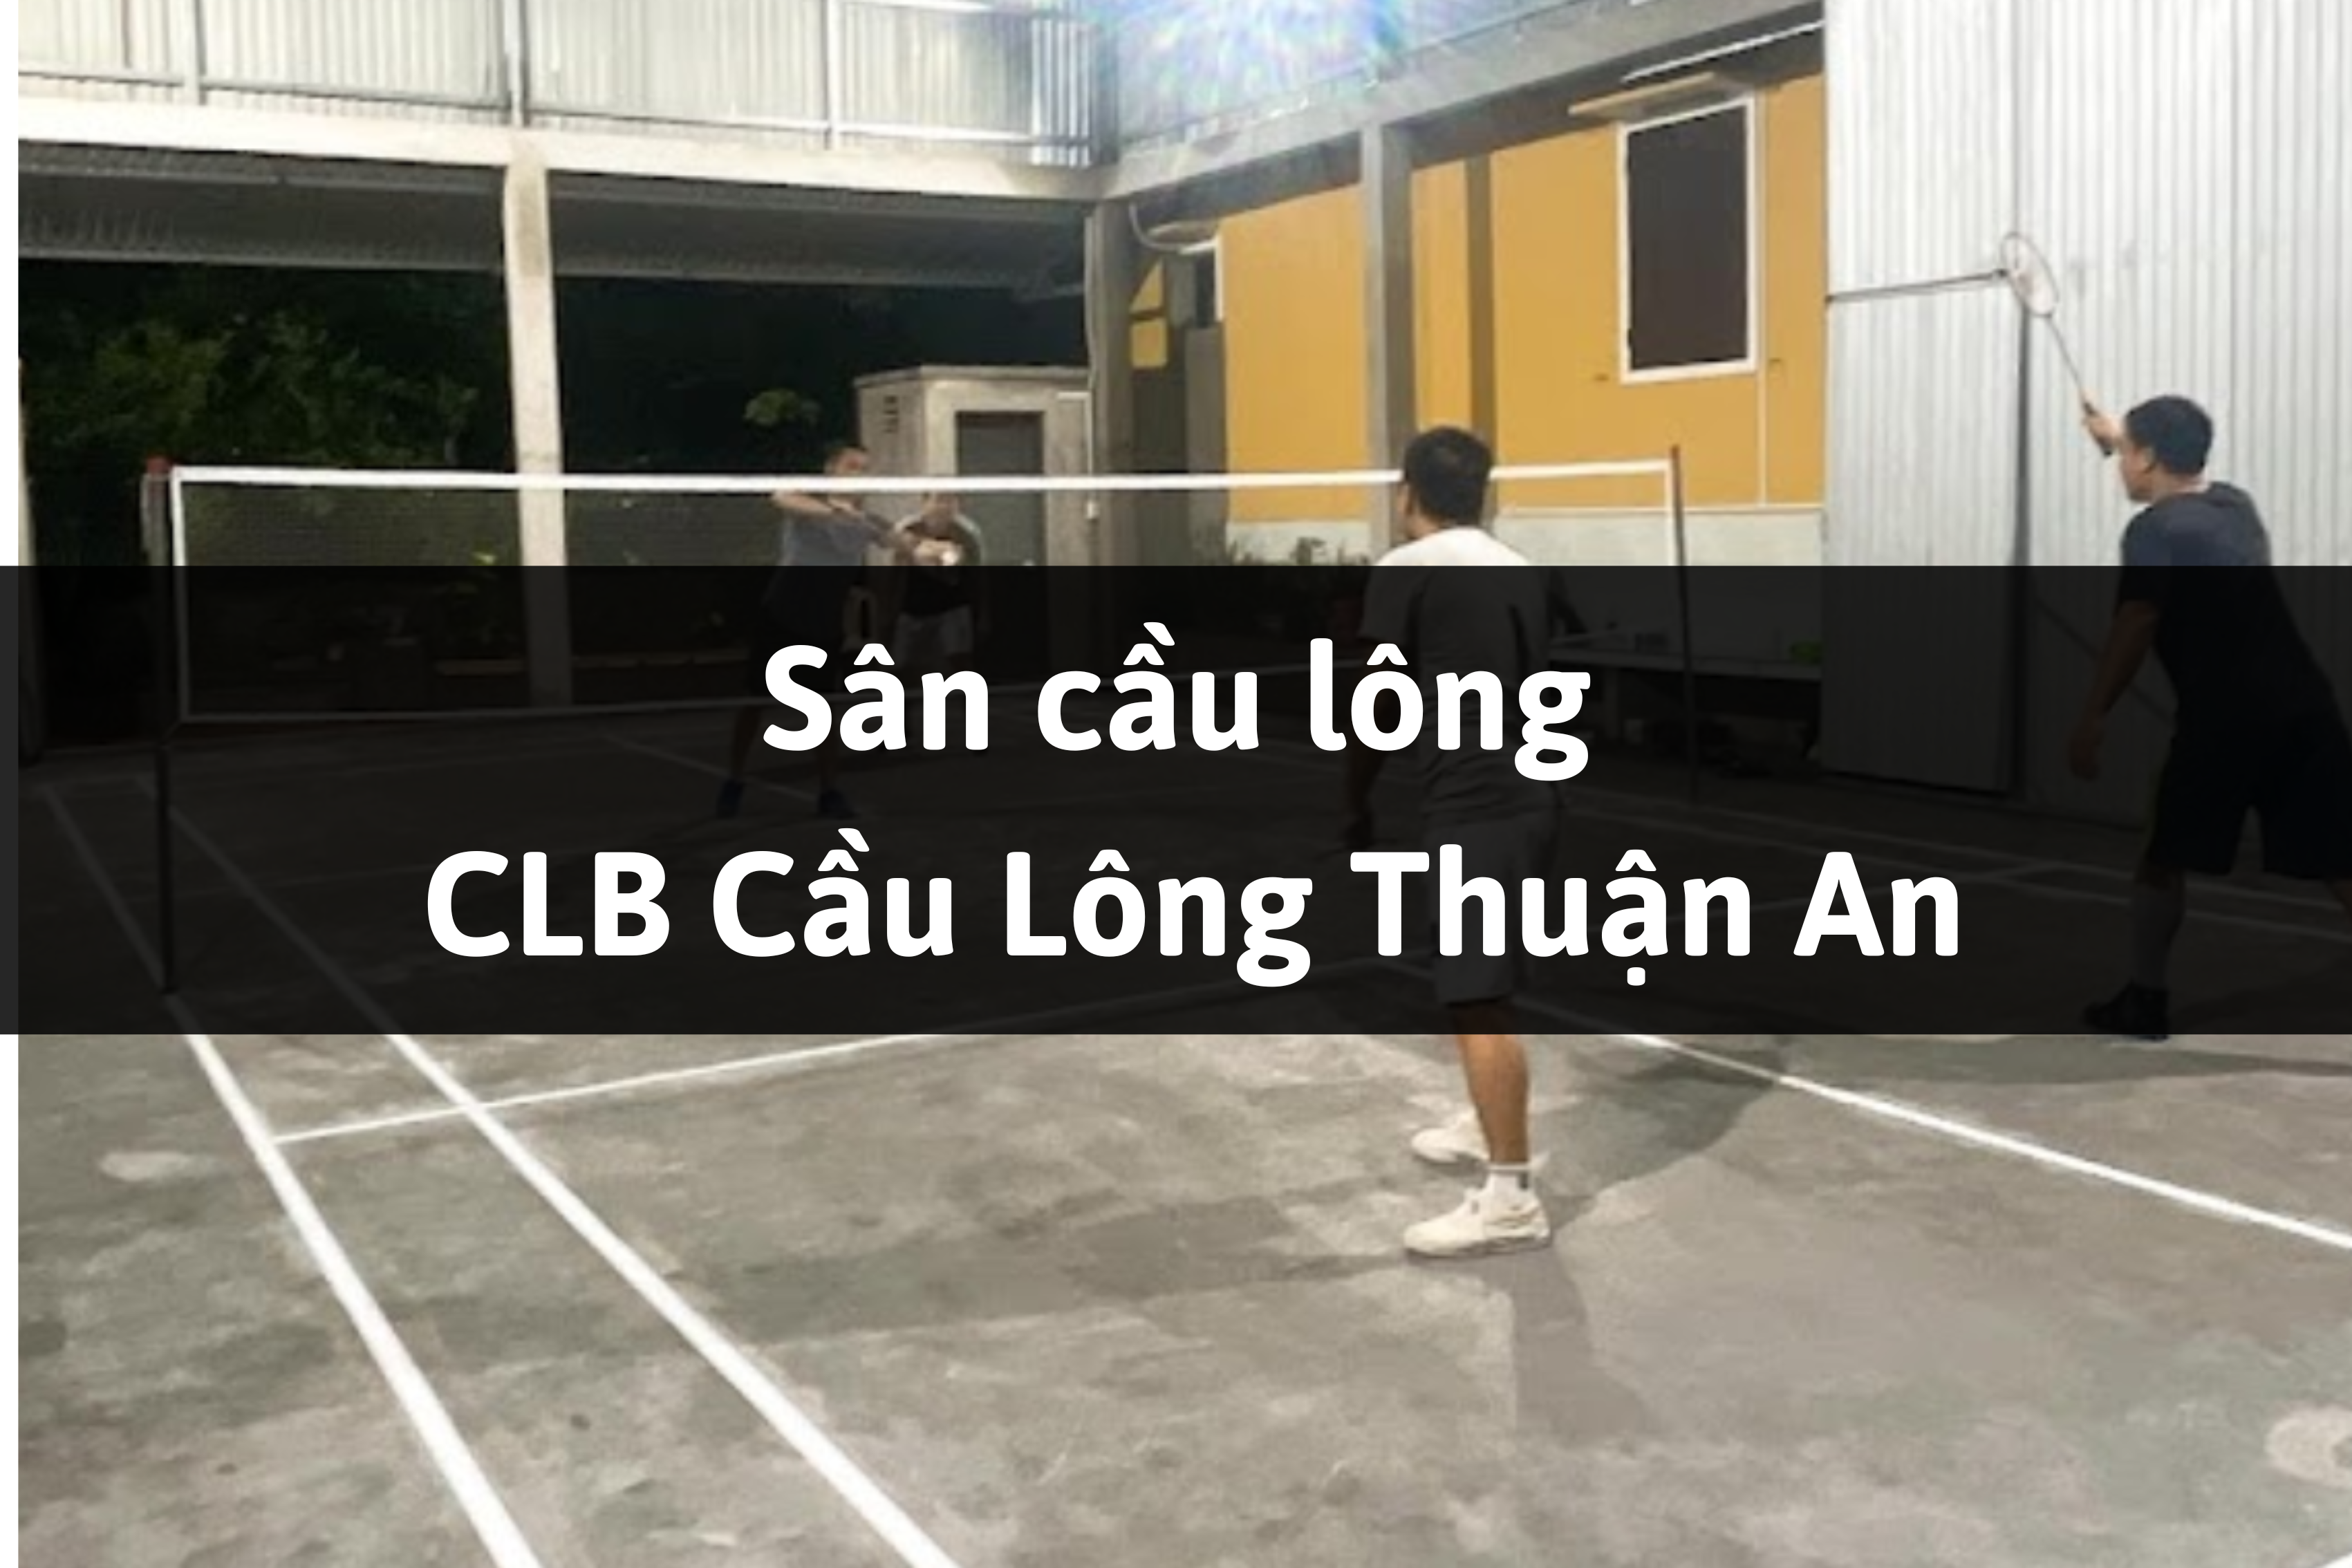 Sân cầu lông CLB Cầu Lông Thuận An, Phú Vang, Thừa Thiên Huế